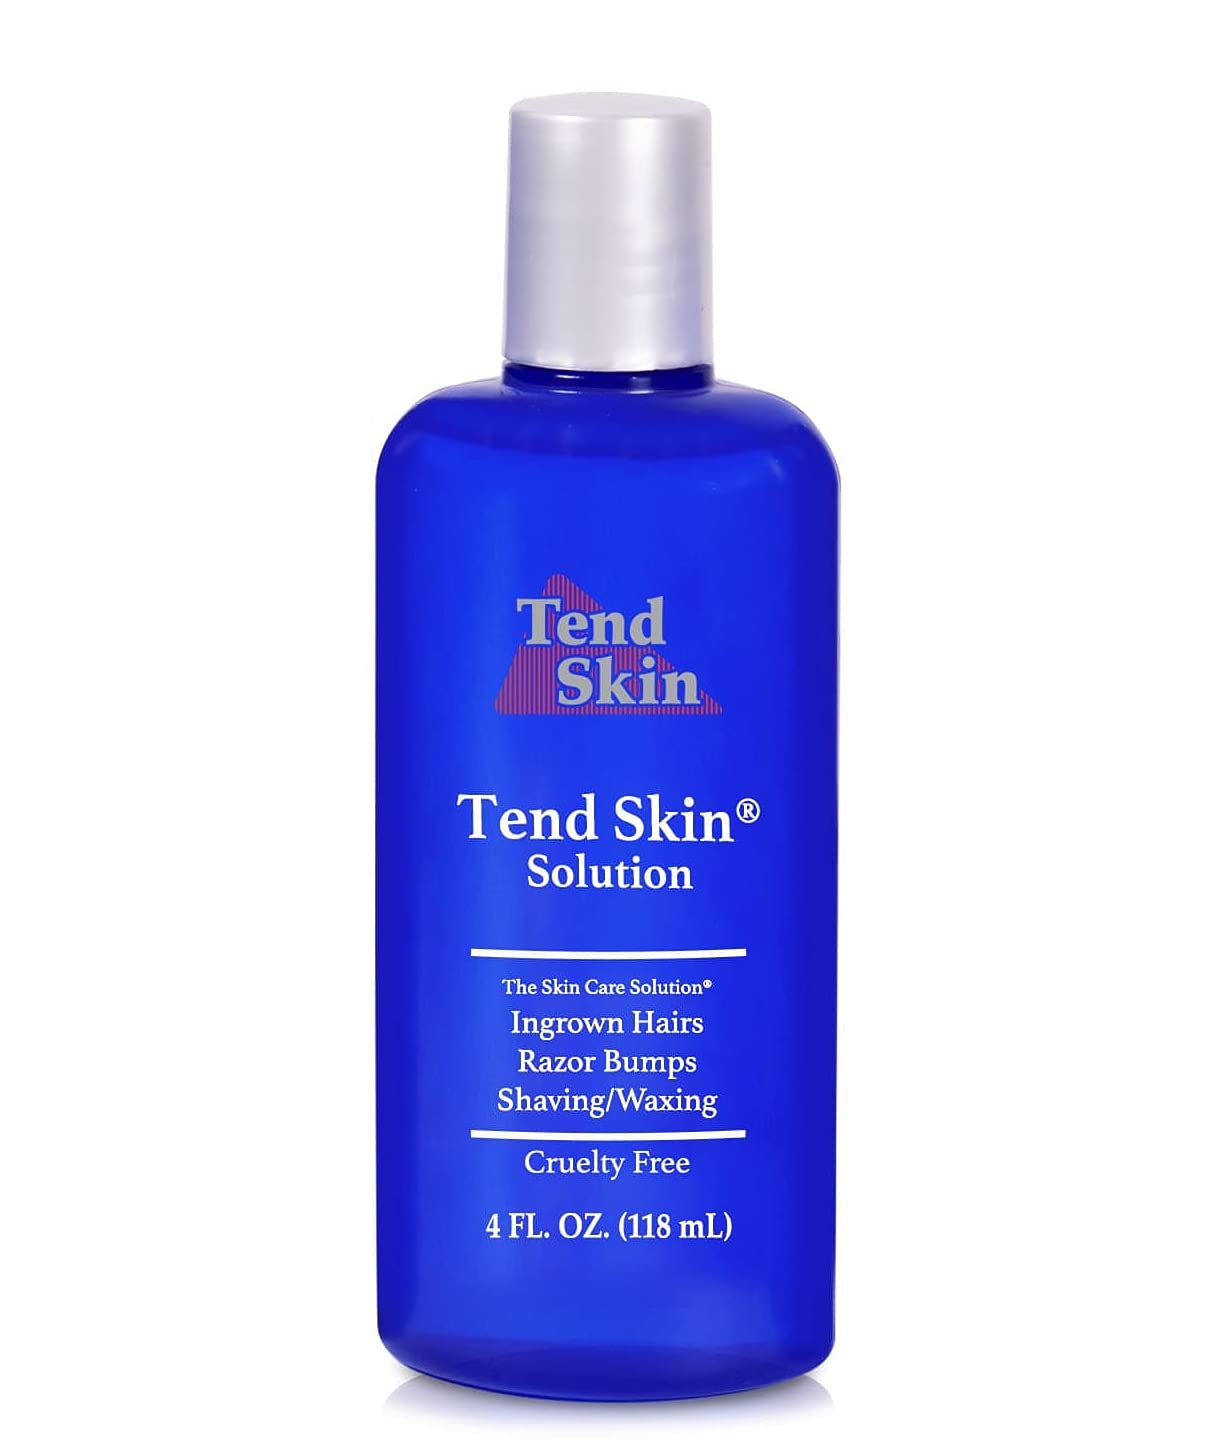 Tend Skin Razor Bump Solution, 4 ounce, Post Shaving & Waxing, for women & men